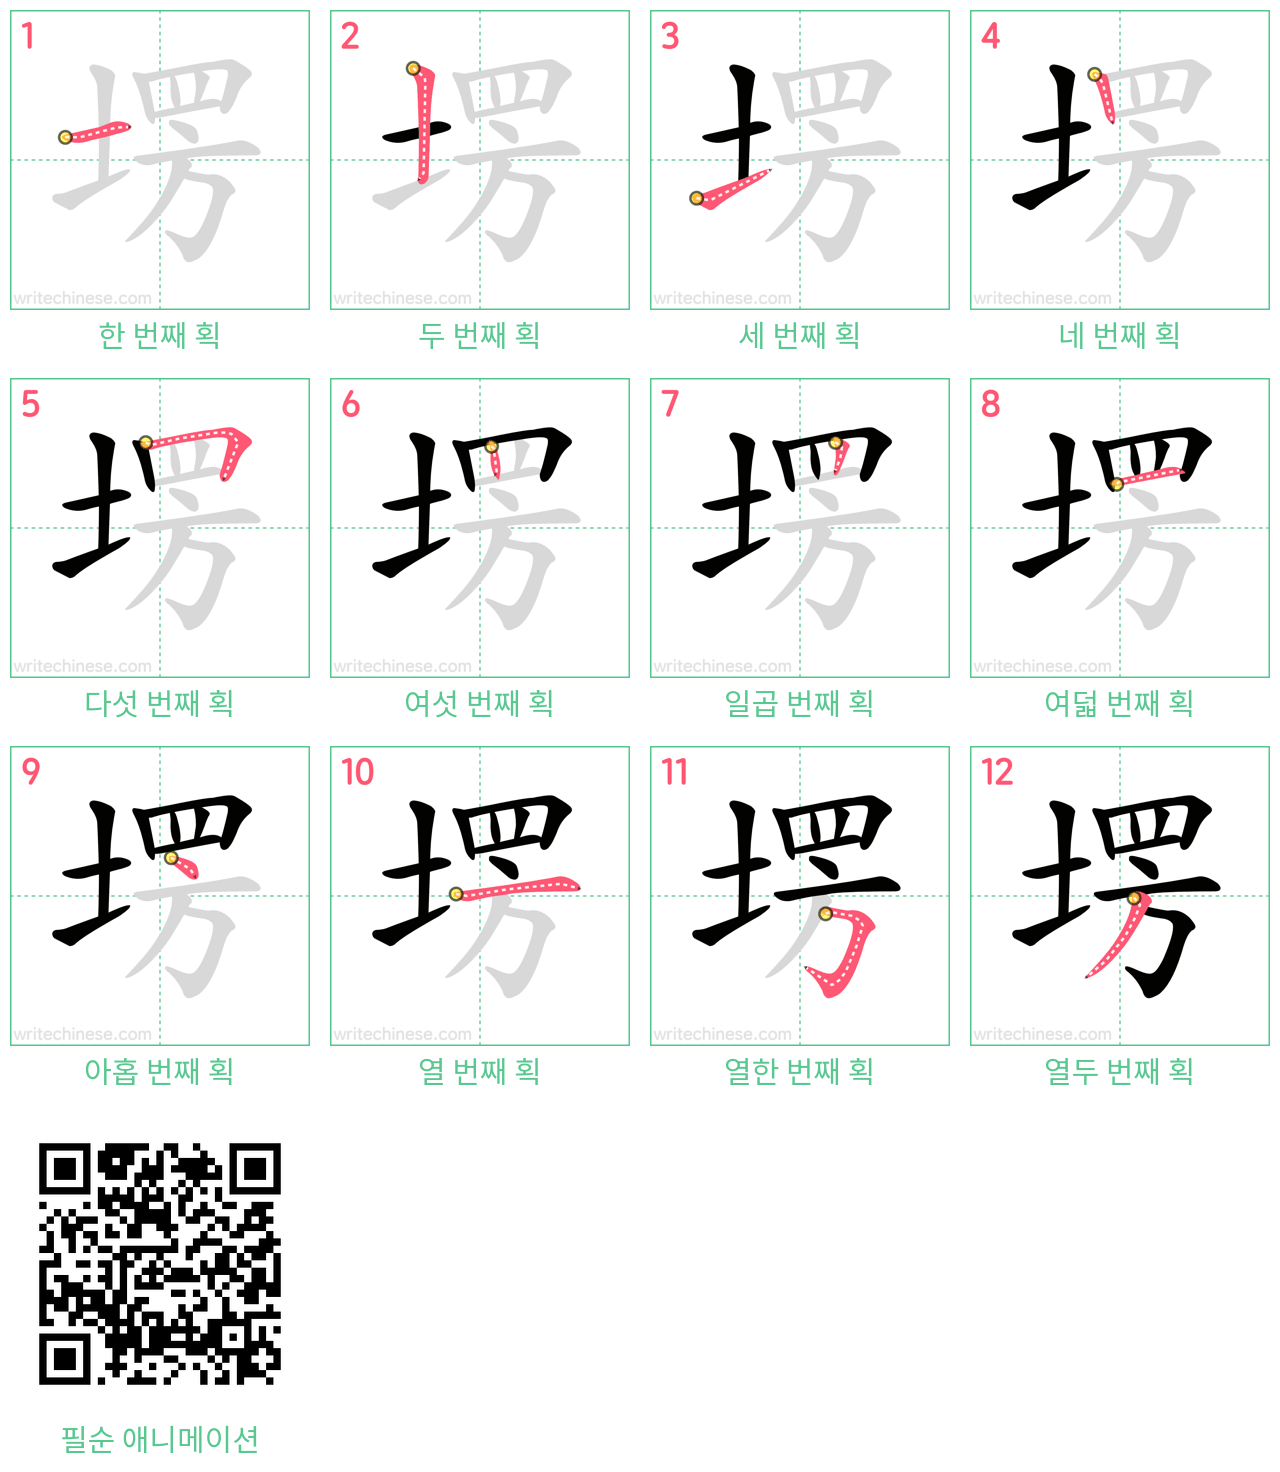 塄 step-by-step stroke order diagrams